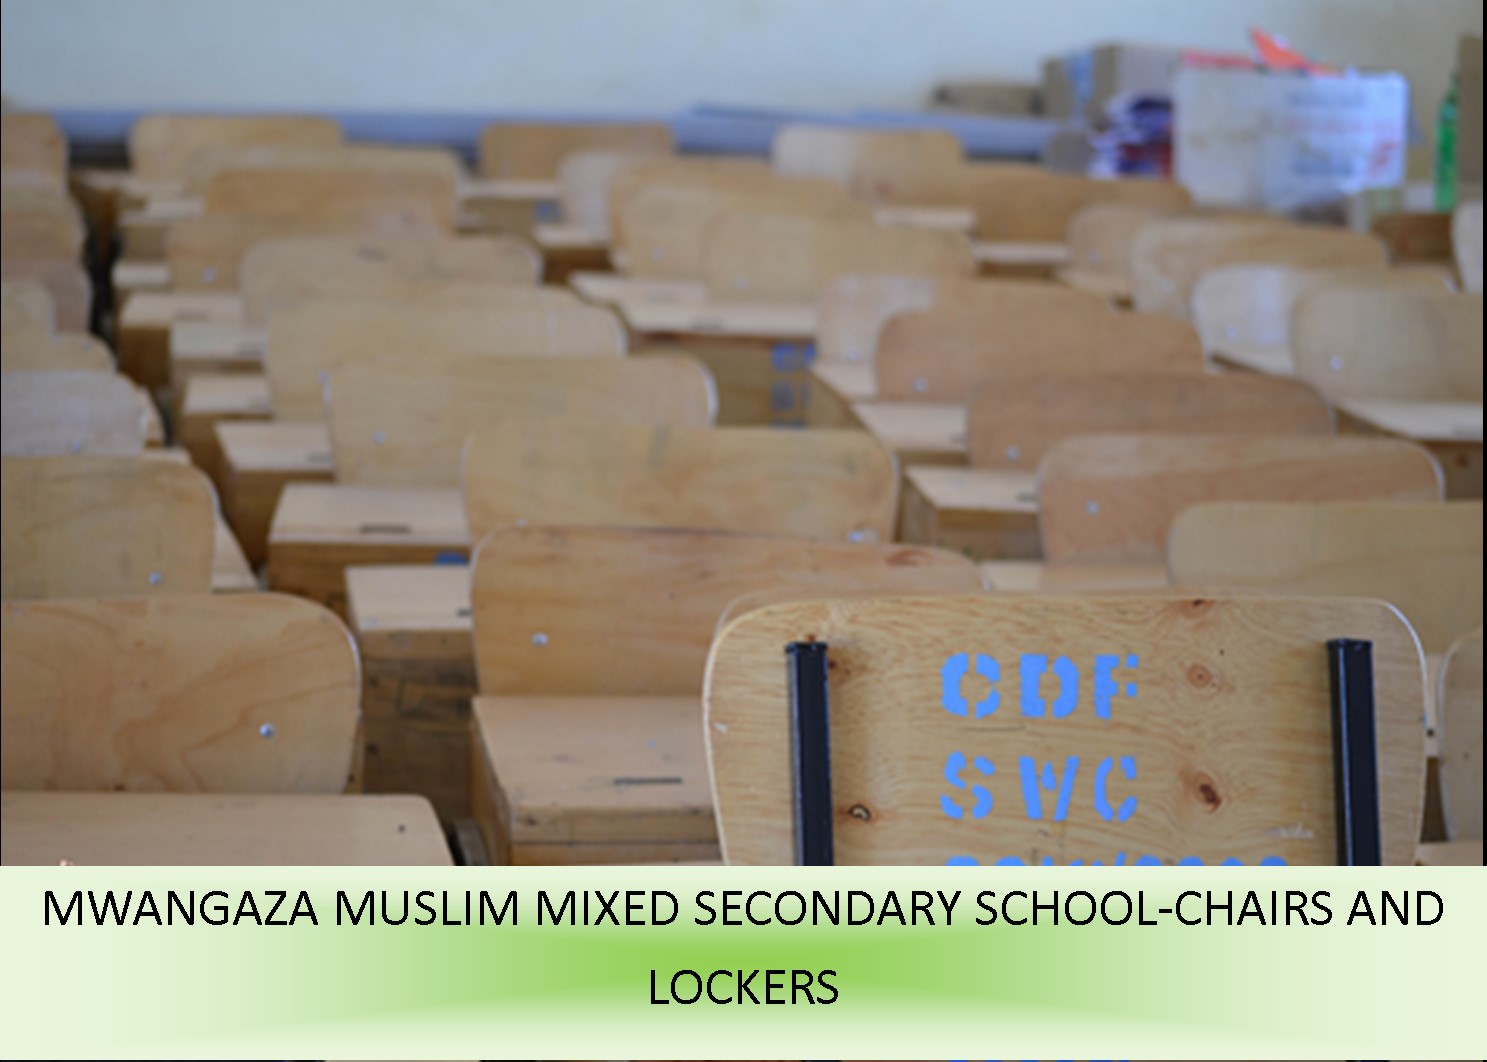 https://samburu-west.ngcdf.go.ke/wp-content/uploads/2021/08/mwangaza-muslim-mixed-secondary-school-chairs-and-lockers.jpg